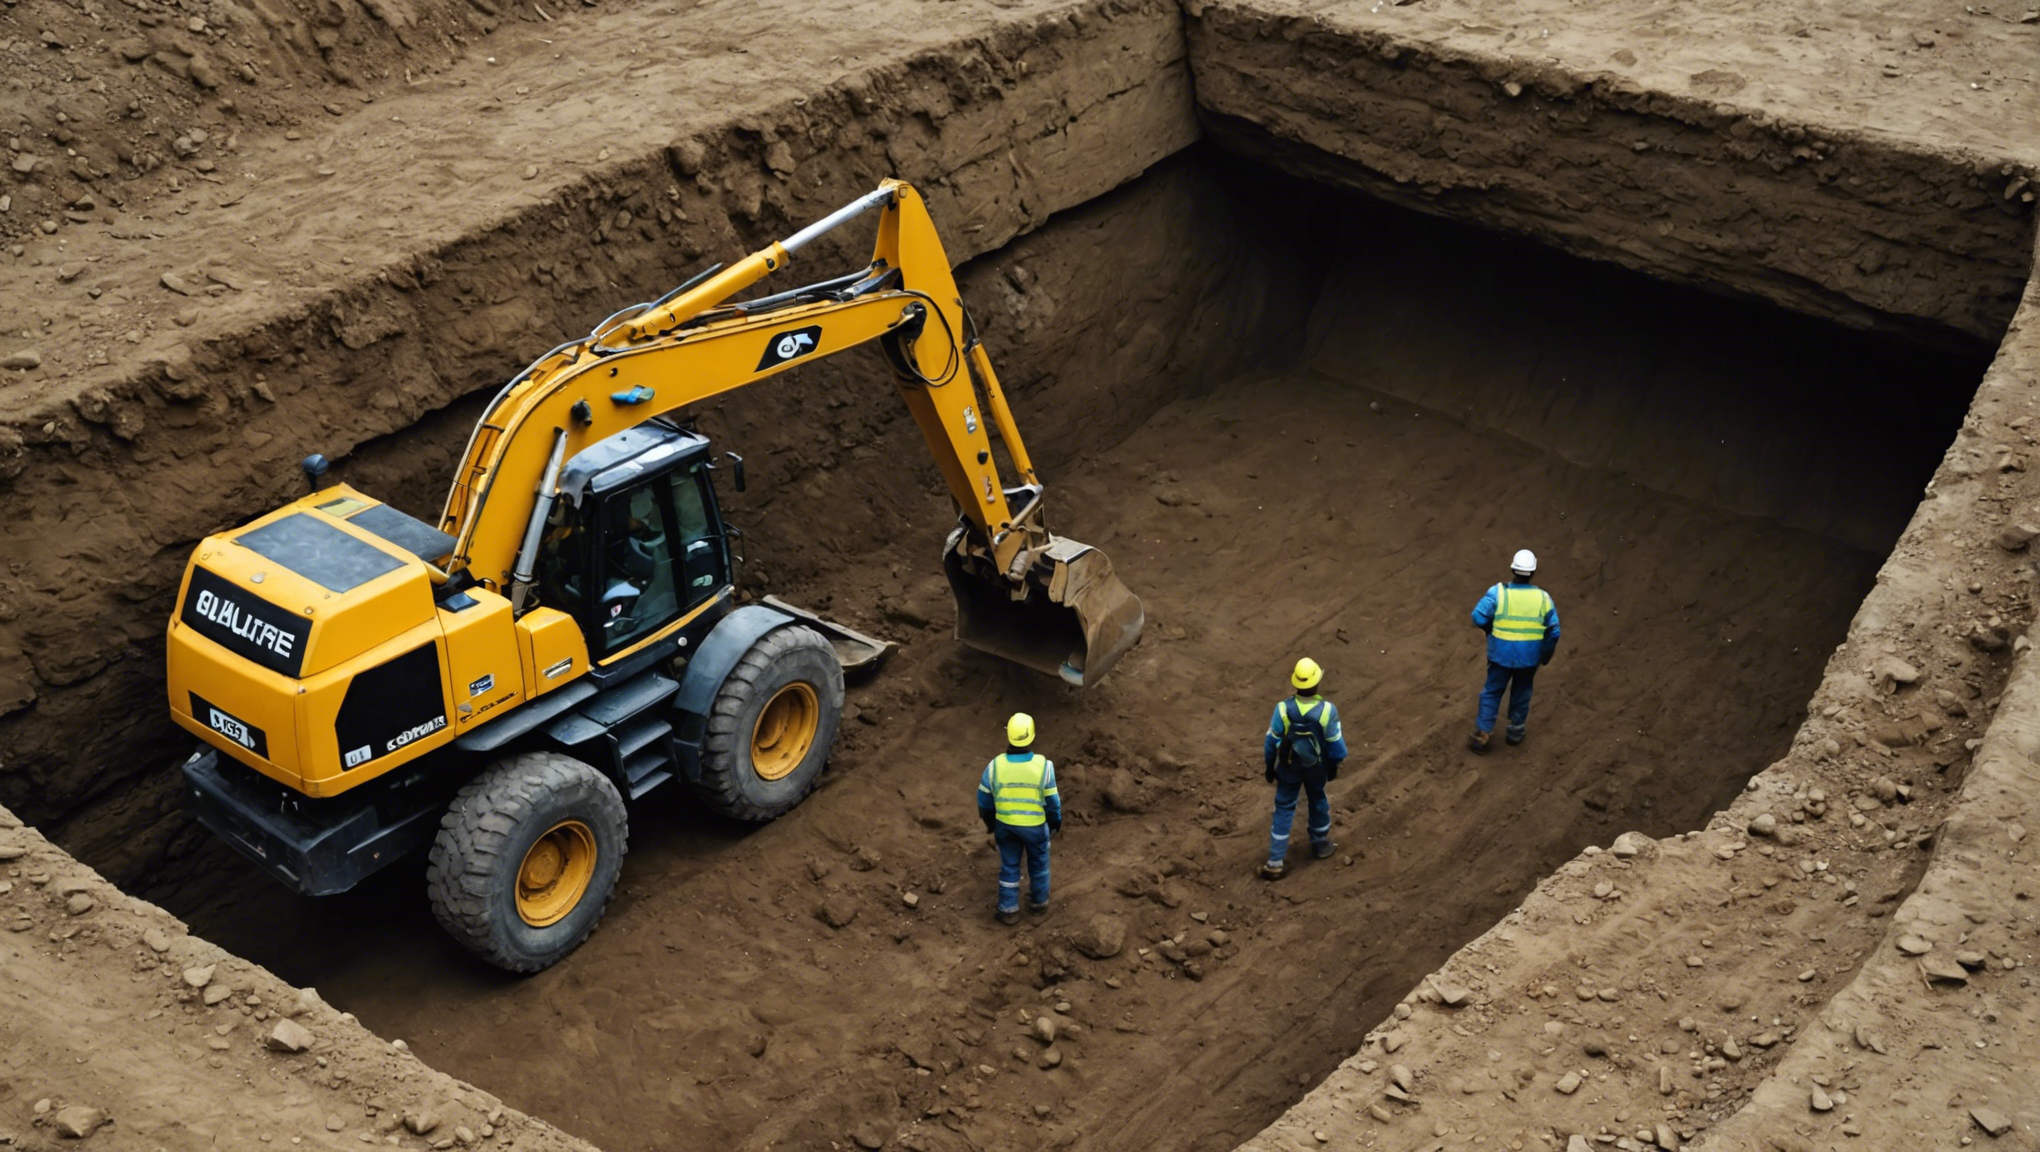 découvrez ce qu'est une excavation et son importance dans ce guide complet. apprenez pourquoi une excavation est essentielle pour de nombreux travaux de construction et de génie civil.